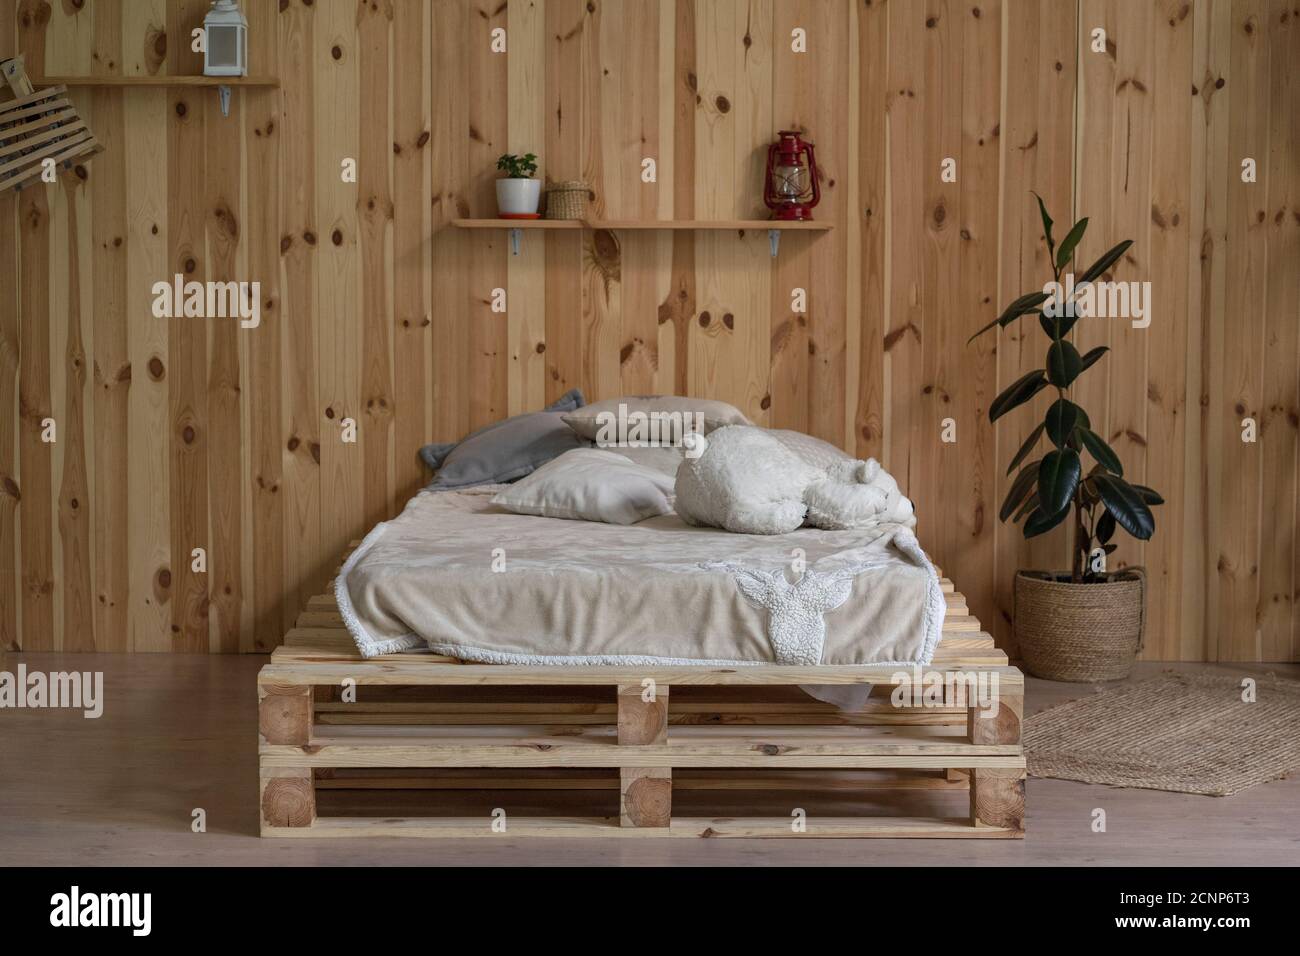 Holzbett in minimalem Stil. Startseite Holz Interieur mit Licht Leinen und Vase oder Bücherregale. Hochwertige Fotos Stockfoto